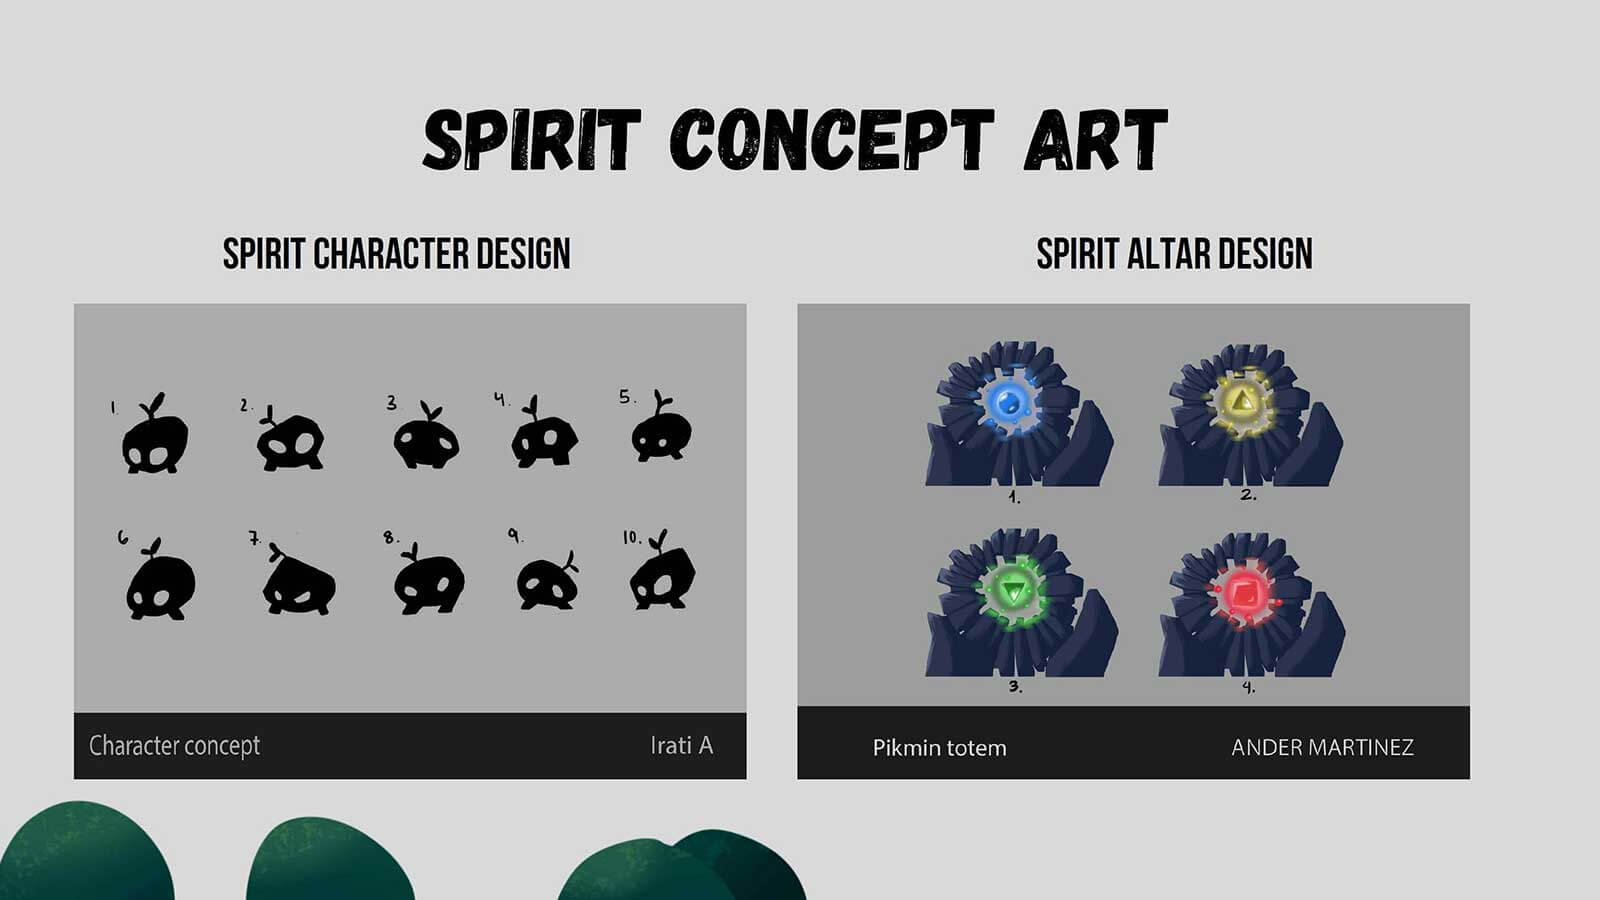 Arte conceptual del personaje espiritual y diseño del altar del segundo año del juego Zima Polaris, destacando elementos creativos y místicos.